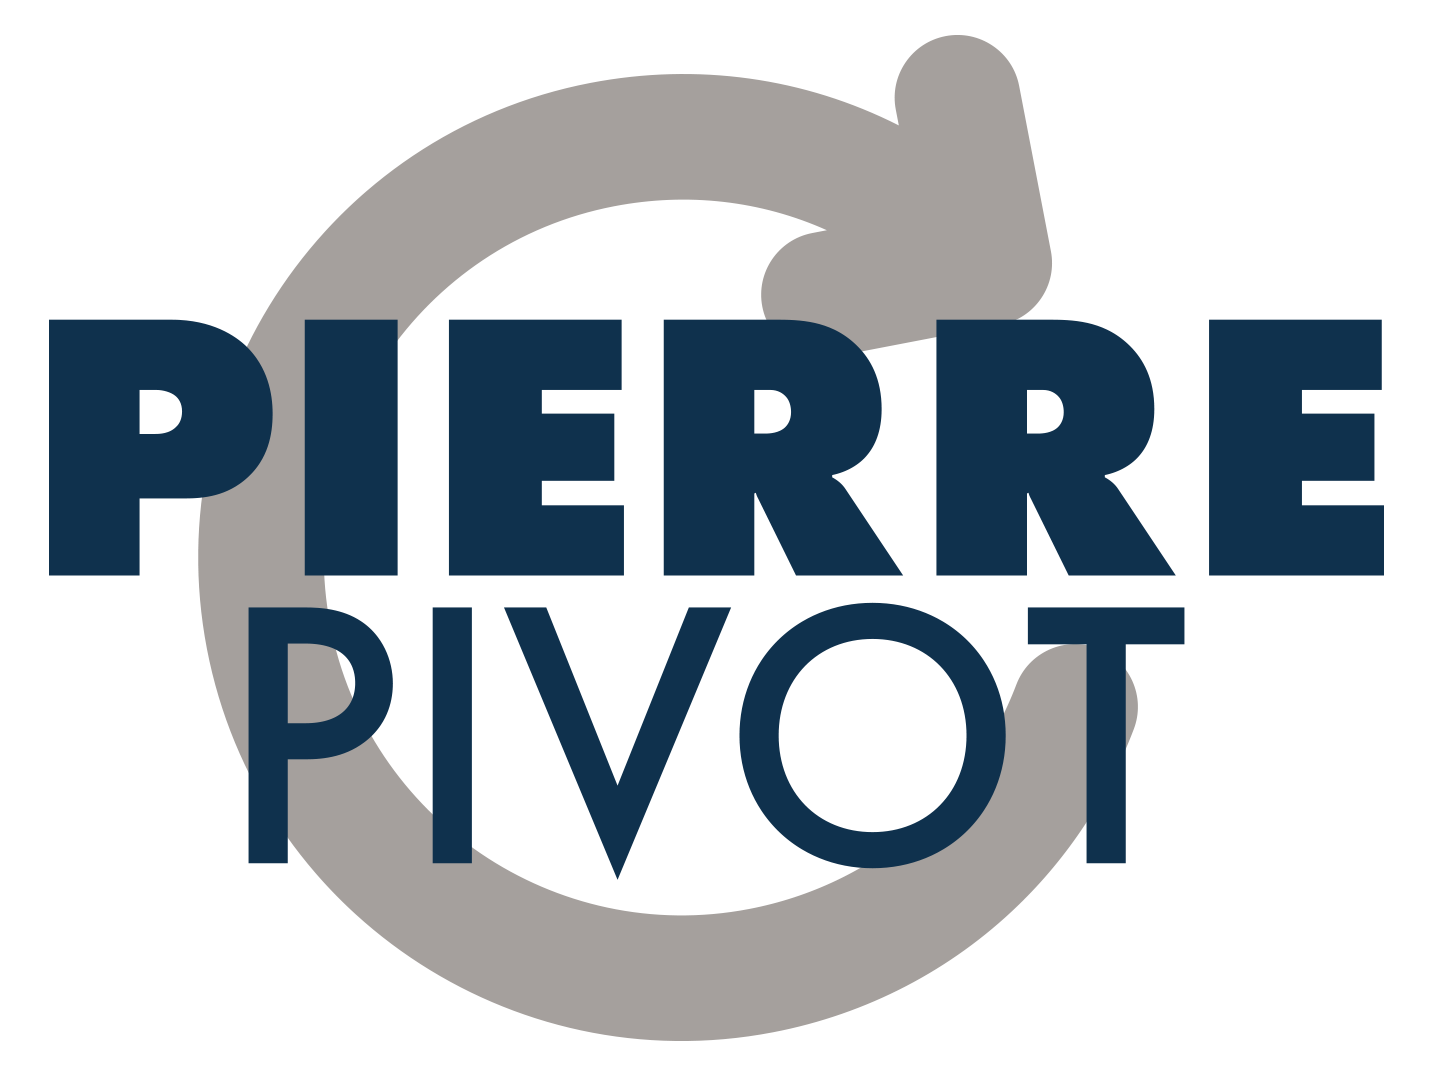 Pierre Pivot